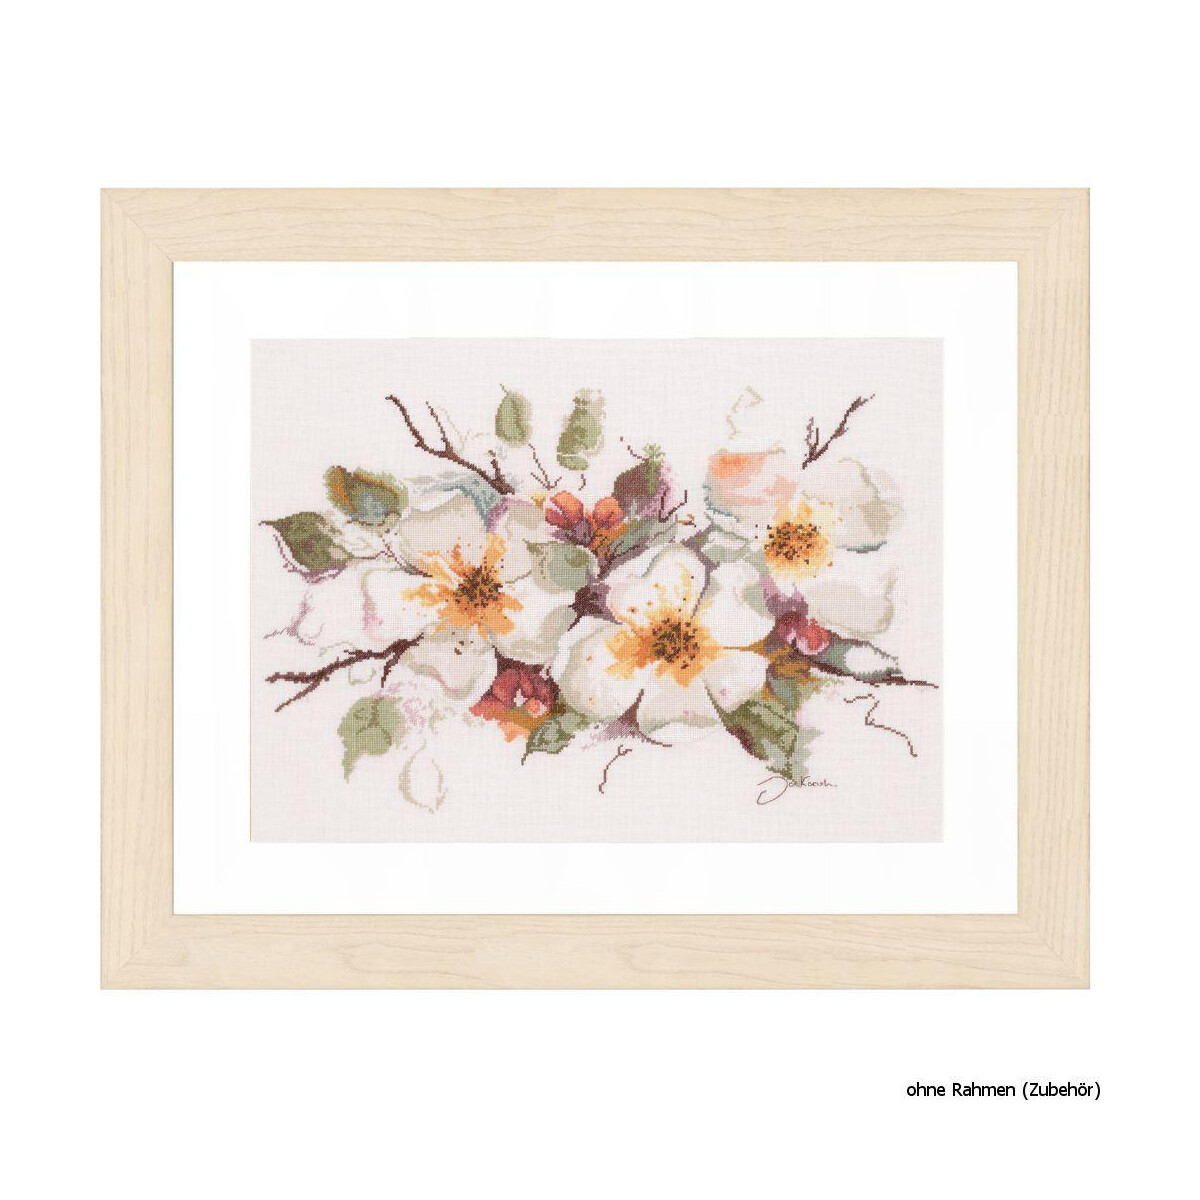 A framed floral cross stitch artwork or lanarte...